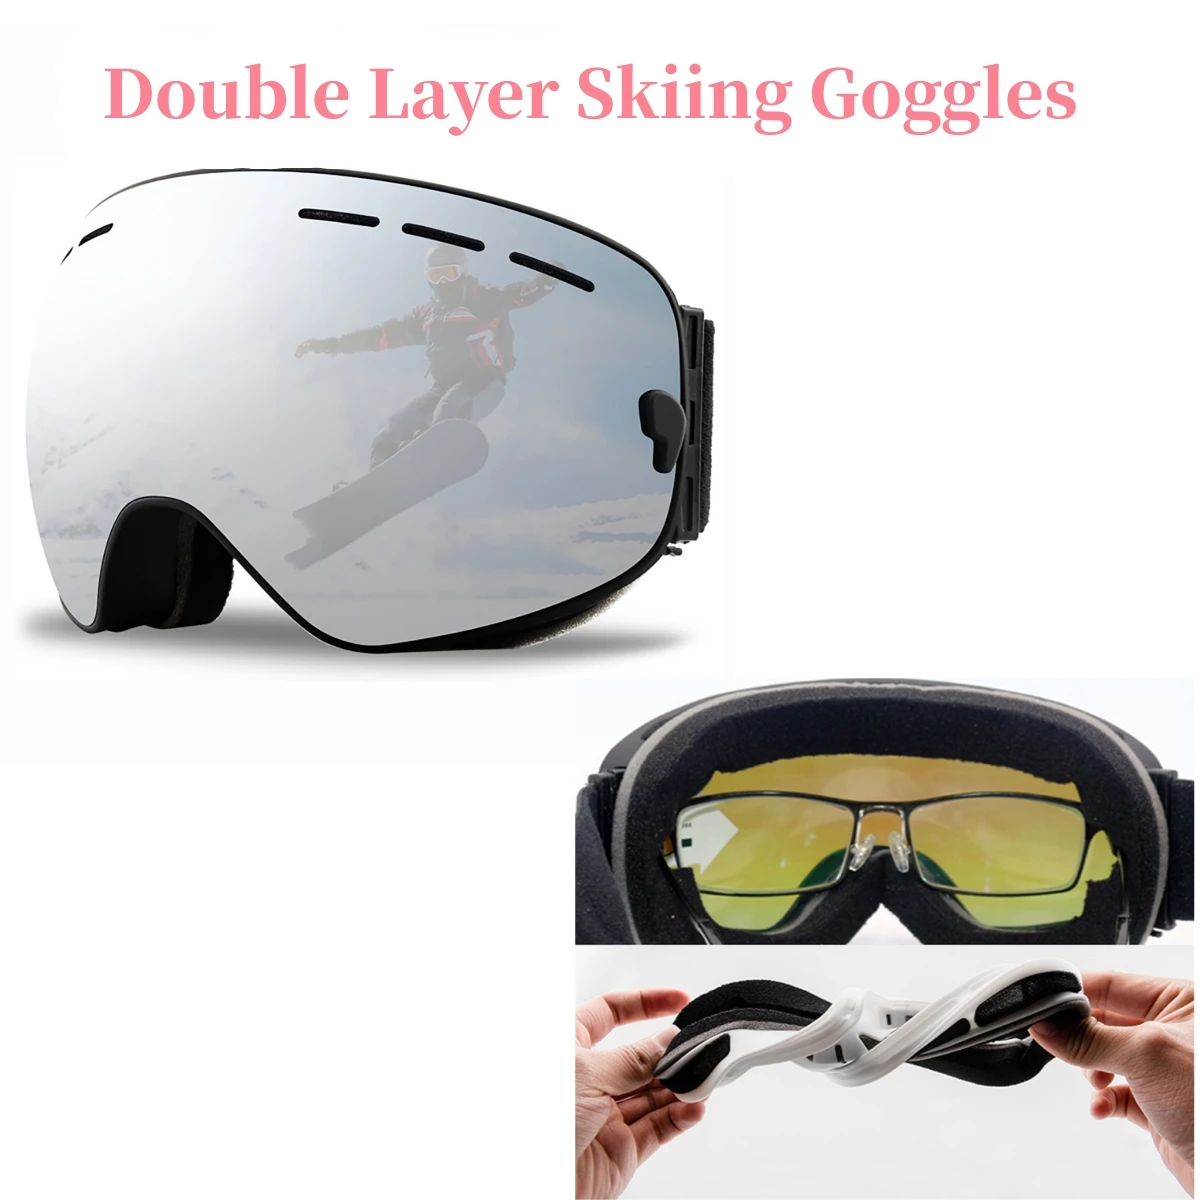 نظارات التزلج على الجليد الجبال الجبلية التزلج على الجليد الثلج الثلج الرياضة الشتوية نظارات الثلج نظارات مزدوجة الطبقة الشمسية للتسلق